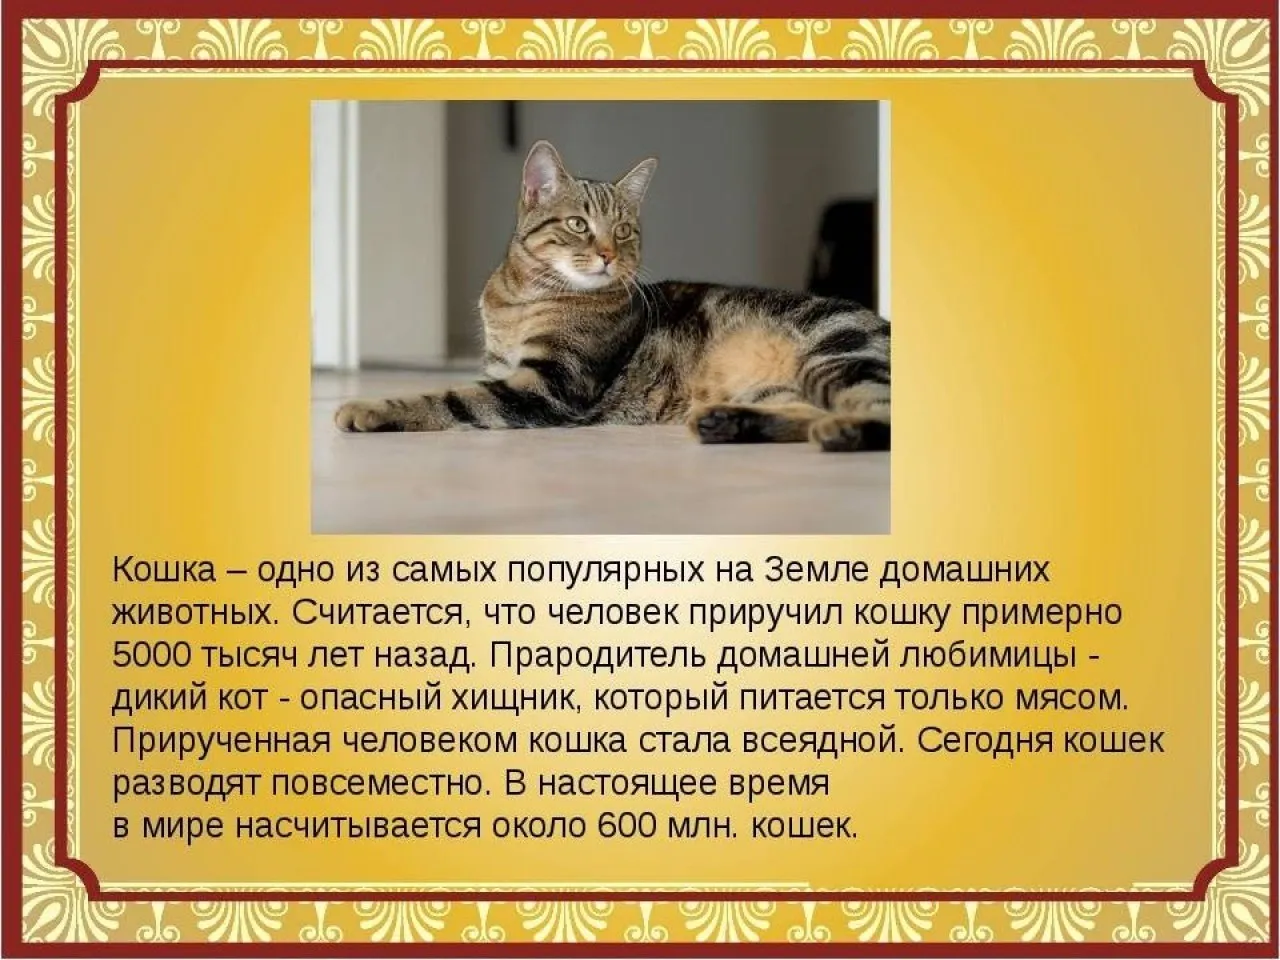 Сочинение описание про кошку. Рассказ о домашних кошках. Расказо домашней кошке. Сообщение о домашних кошках. Рассказ про домашнее животное кота.